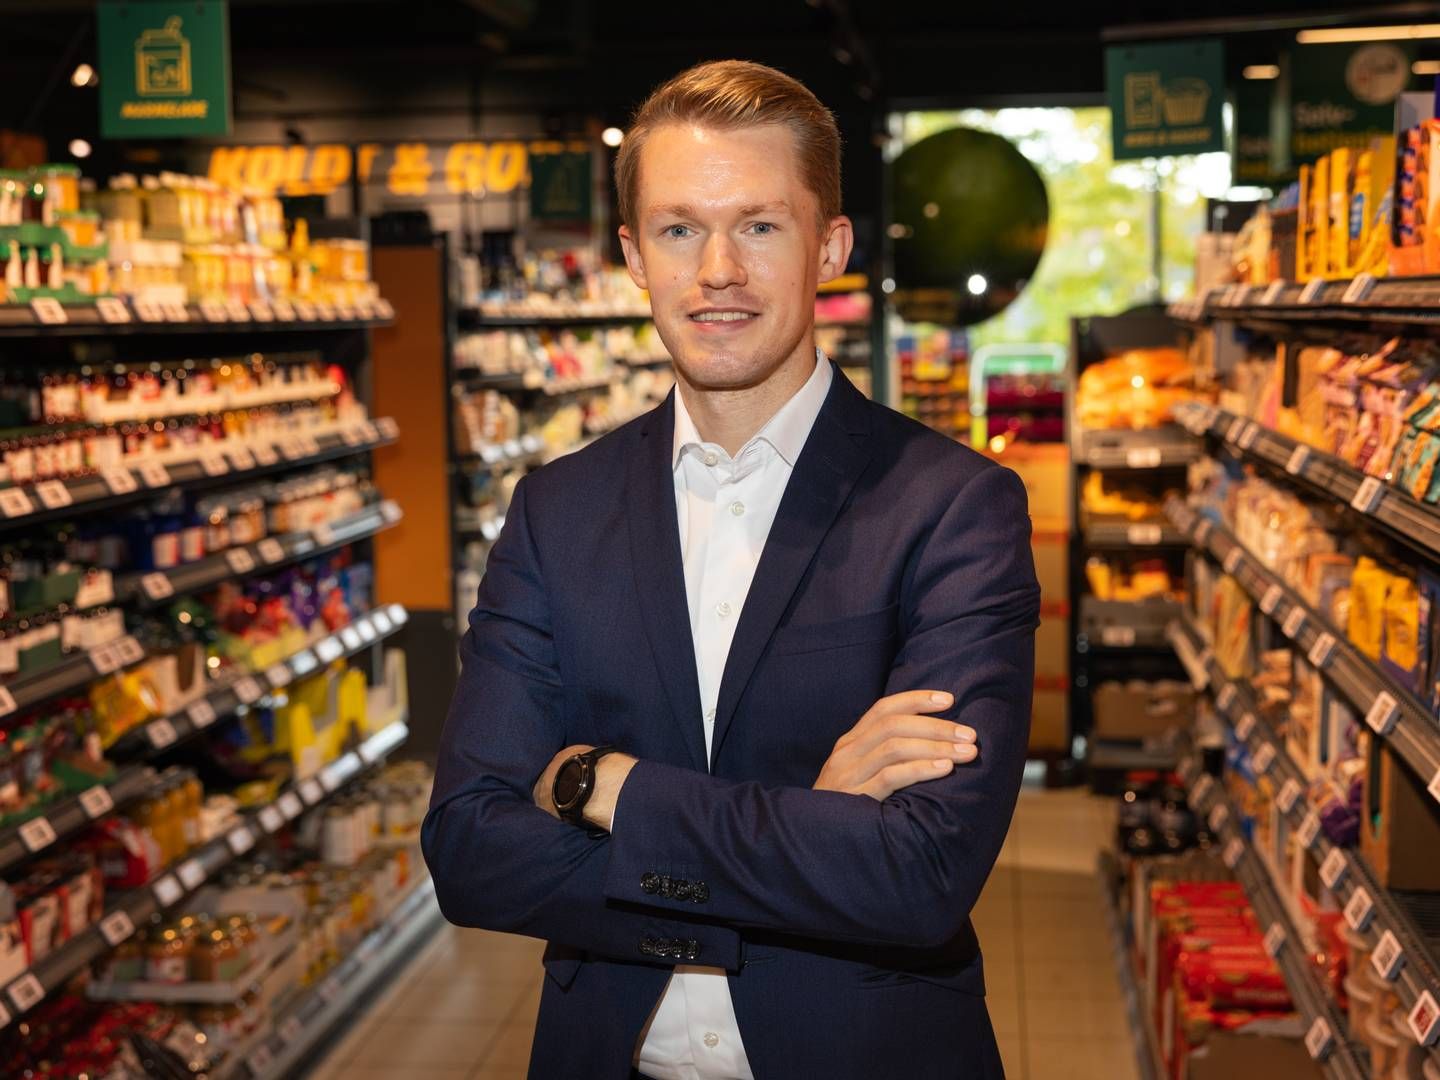 Michael Tilsted, kædedirektør i 365discount, fortæller, at nøglen til succes ligger i at få mere omsætning ind i butikkerne. | Foto: Gregers Tycho/Jyllands-Posten